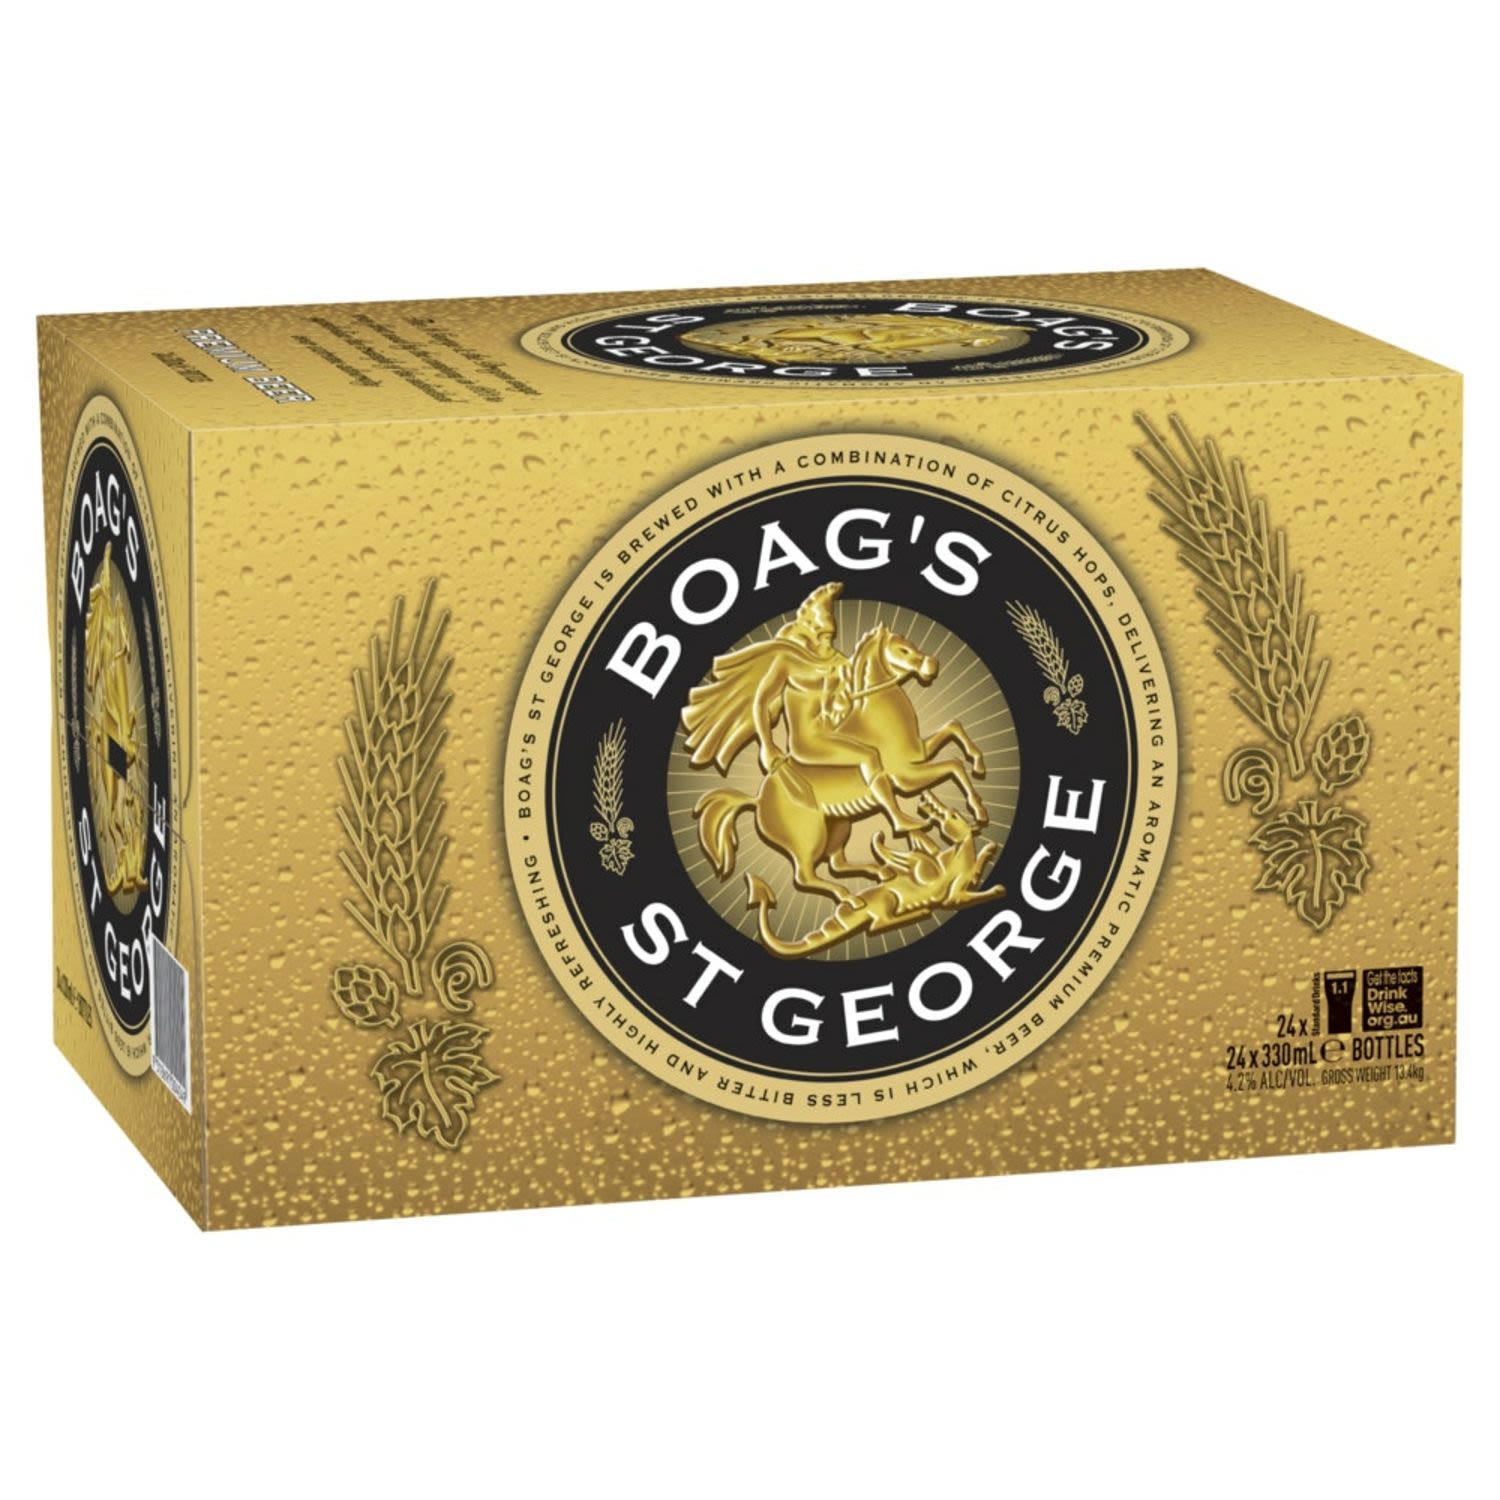 James Boag's St George Lager Bottle 330mL 24 Pack